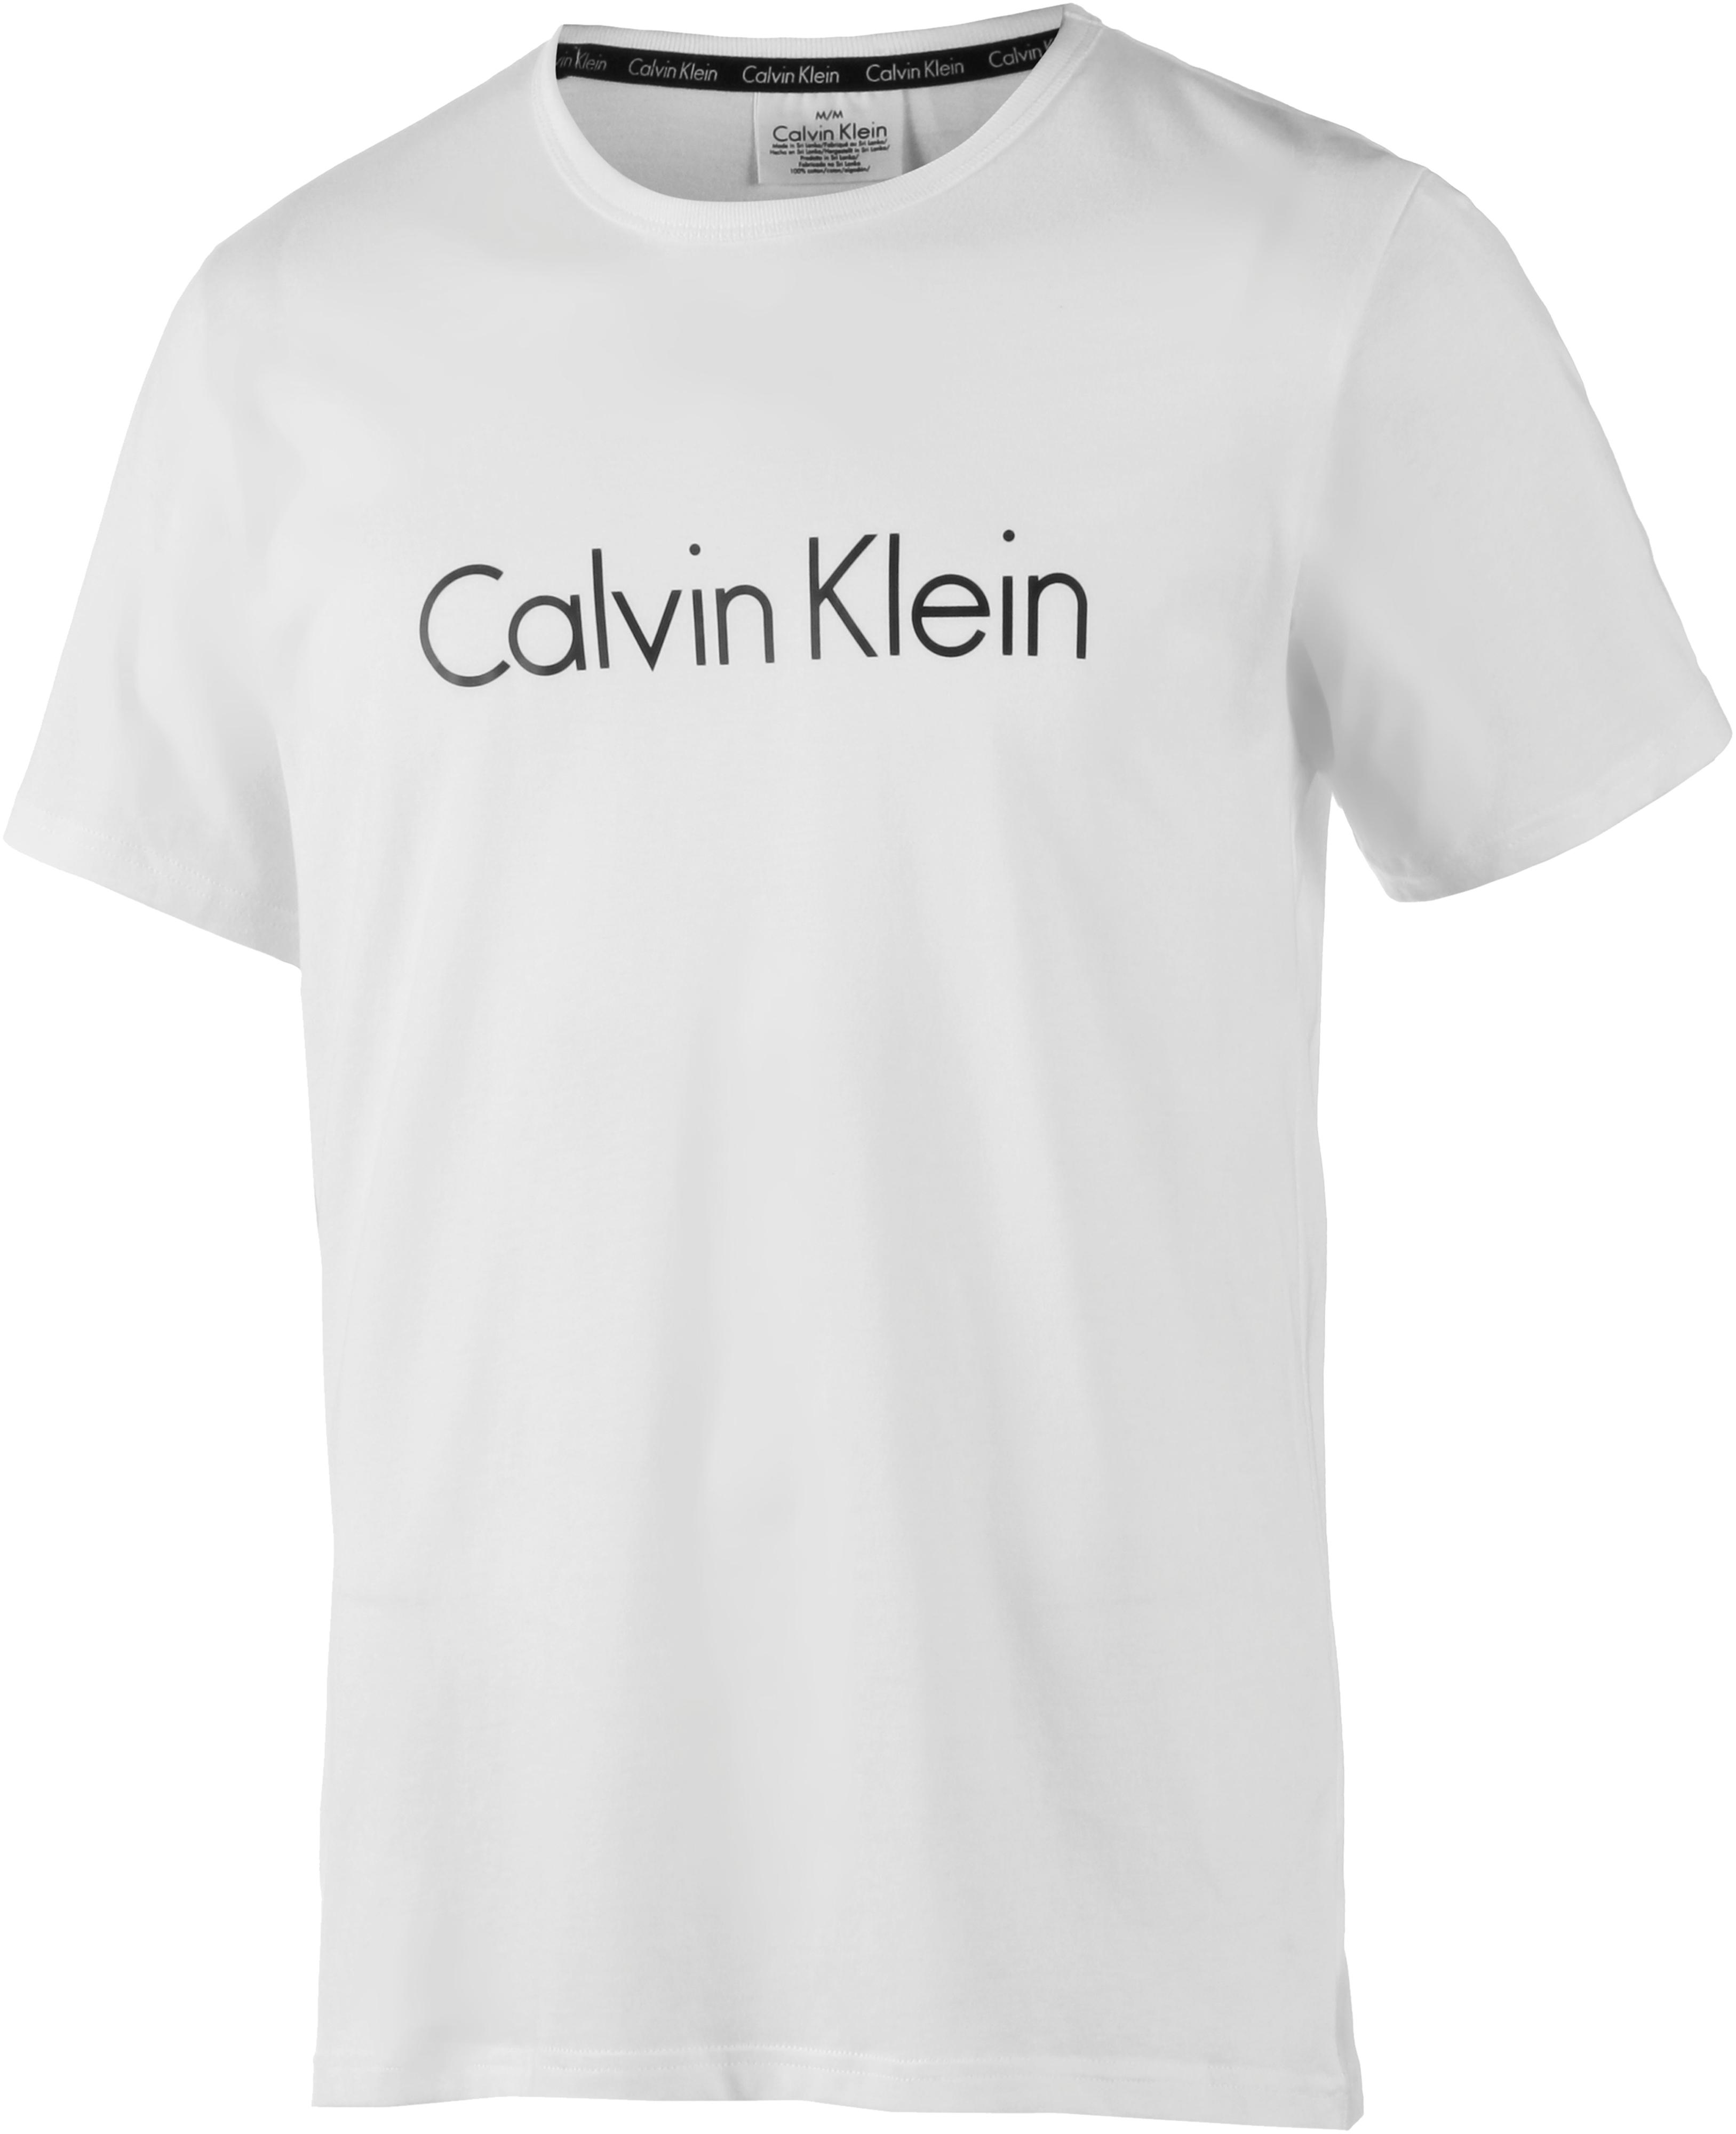 Image of Calvin Klein Printshirt Herren